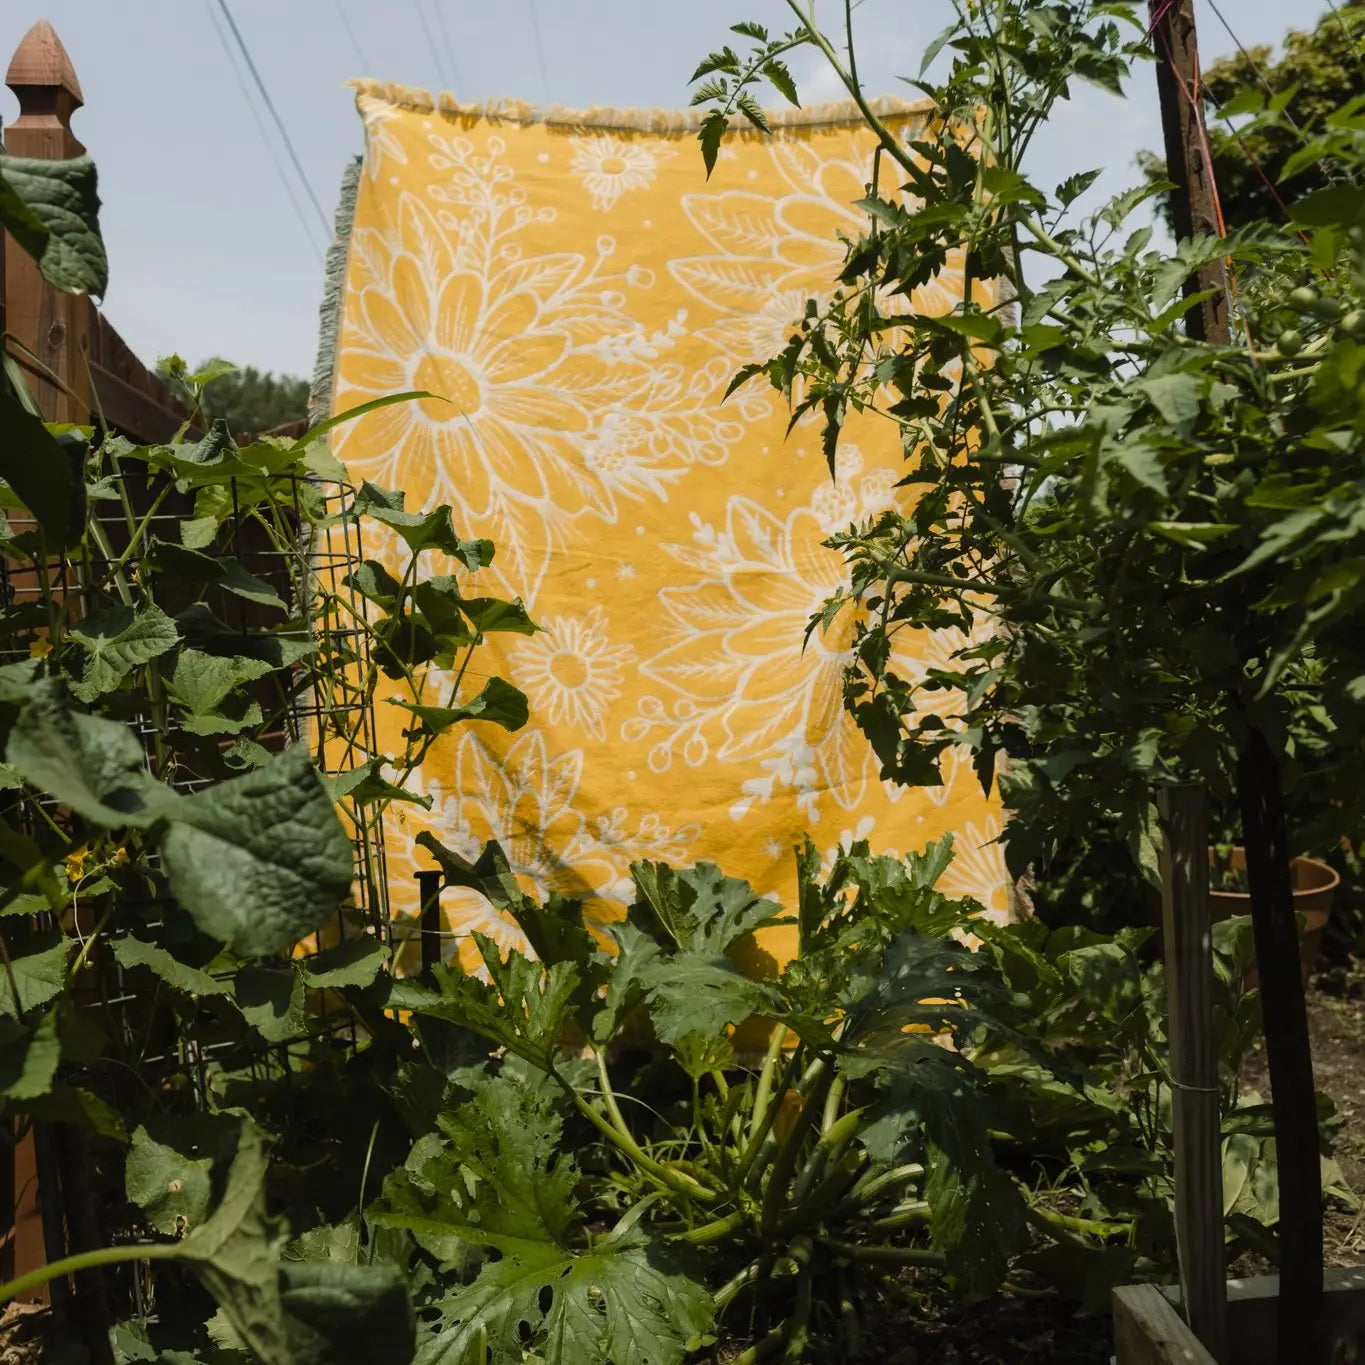 Yellow Lousia Woven Blanket